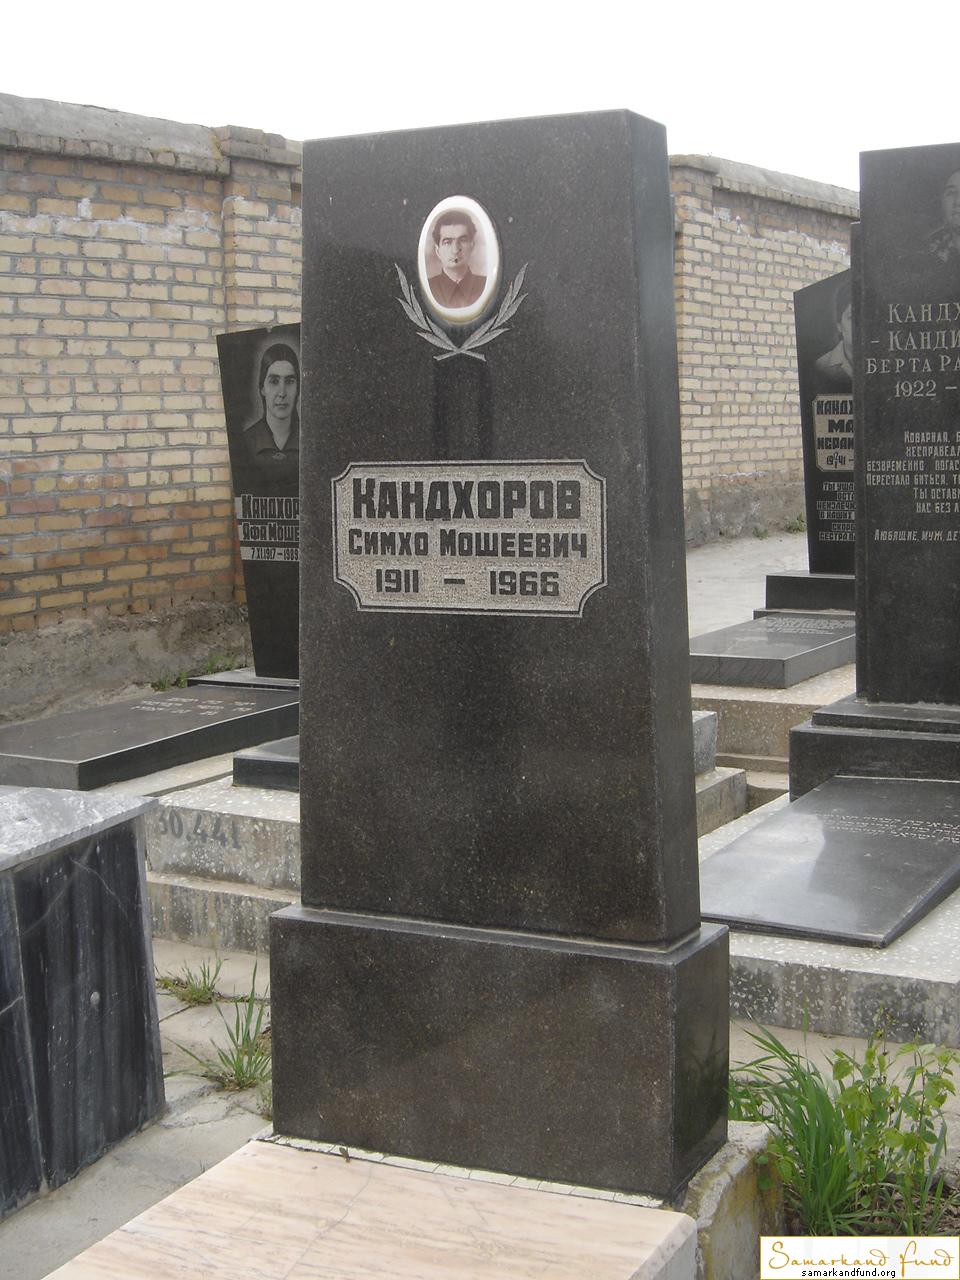 Кандхоров Симхо Мошеевич  1911 - 1966 зах. 470.203 №30.JPG